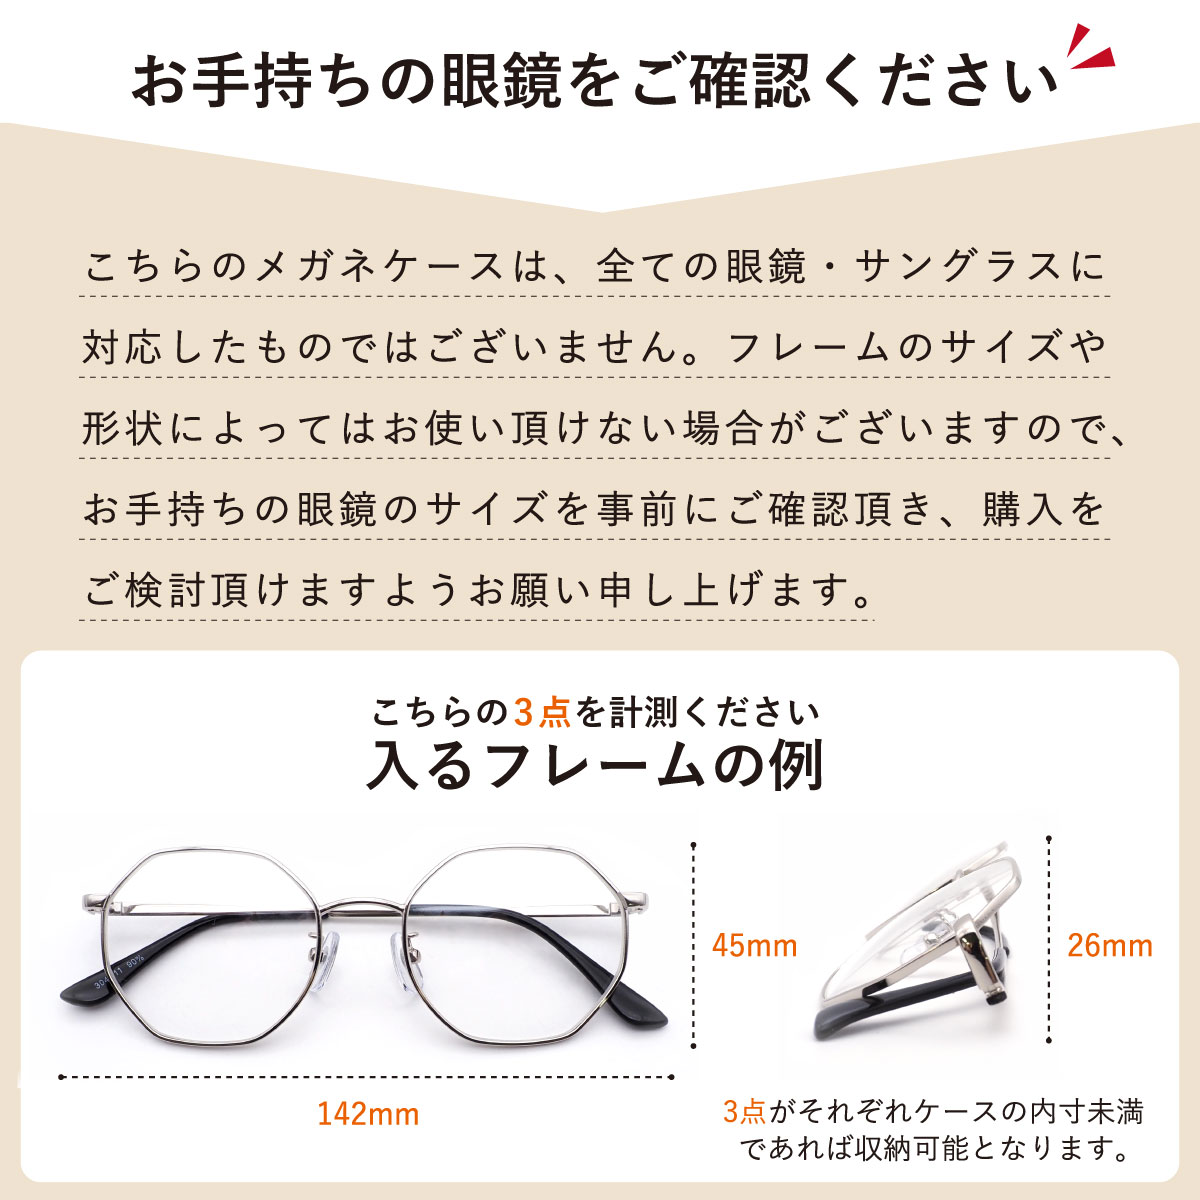 メガネケース 折りたたみ Lサイズ 大きめ シンプル コンパクト 収納 旅行 眼鏡 サングラス 老眼鏡 敬老の日 贈り物  :d-107:オプティックストアグラスガーデン 通販 